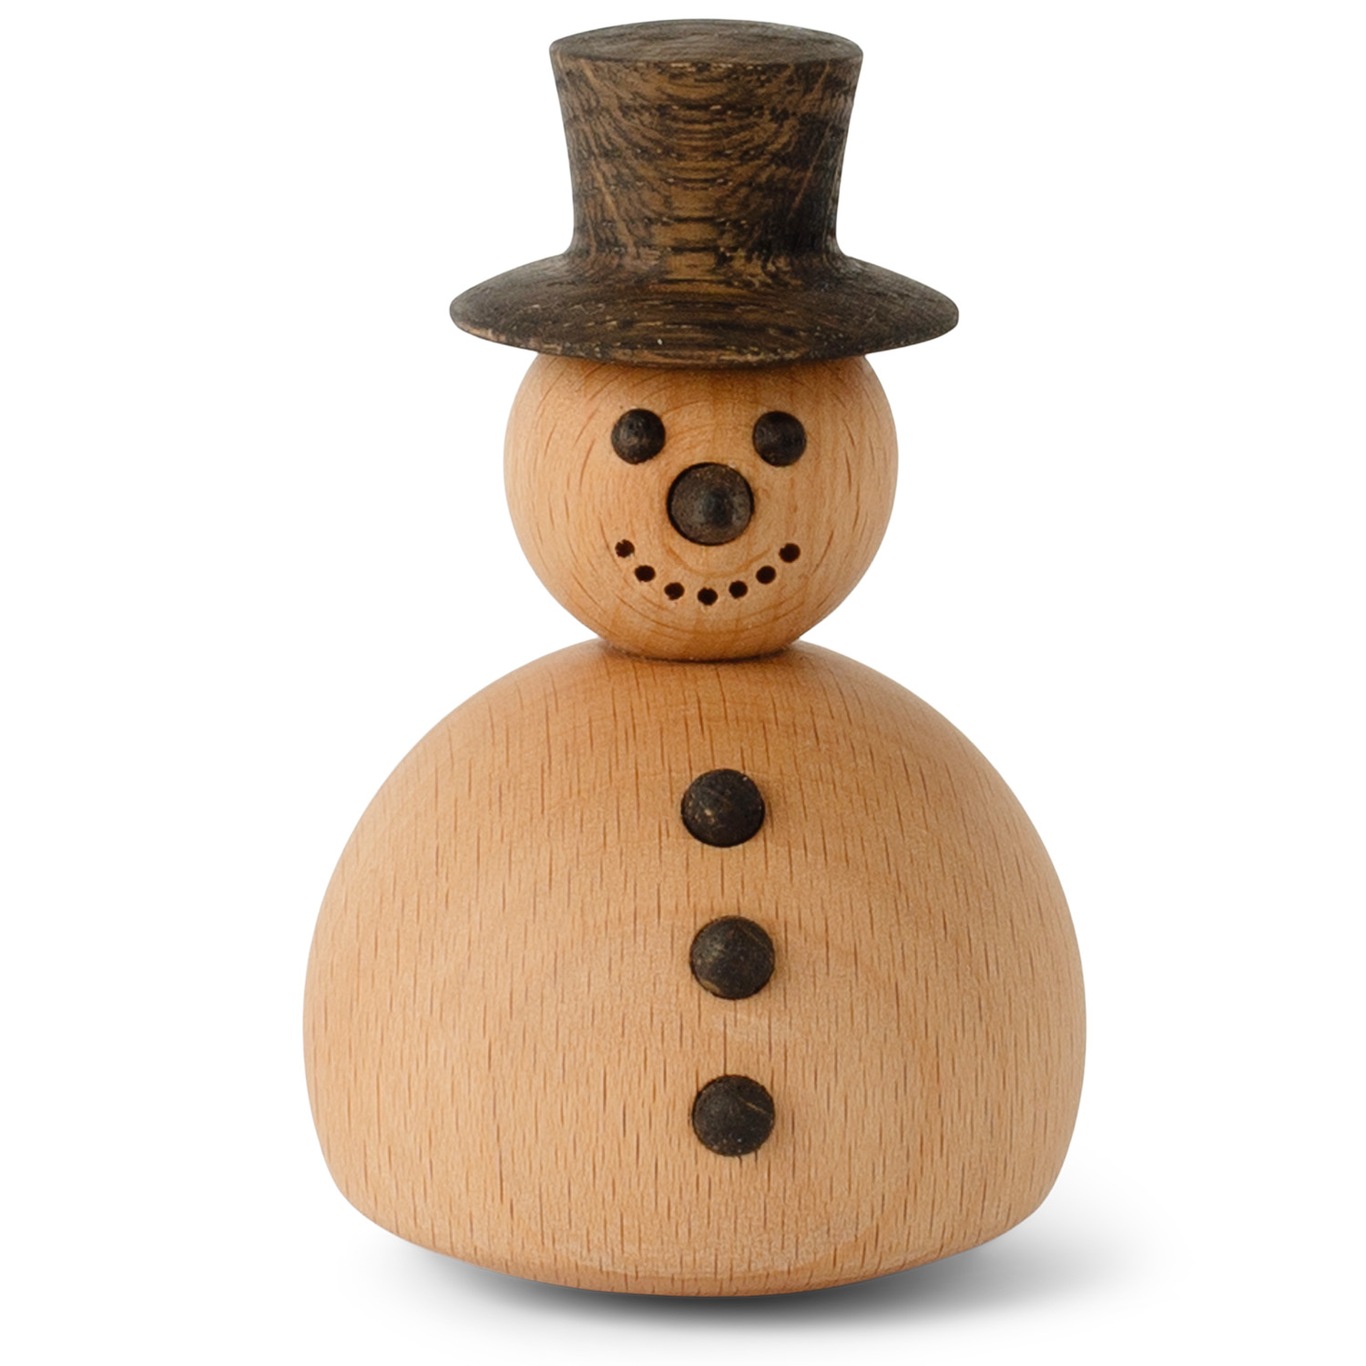 The Snowman Holzfigur 9.4 cm